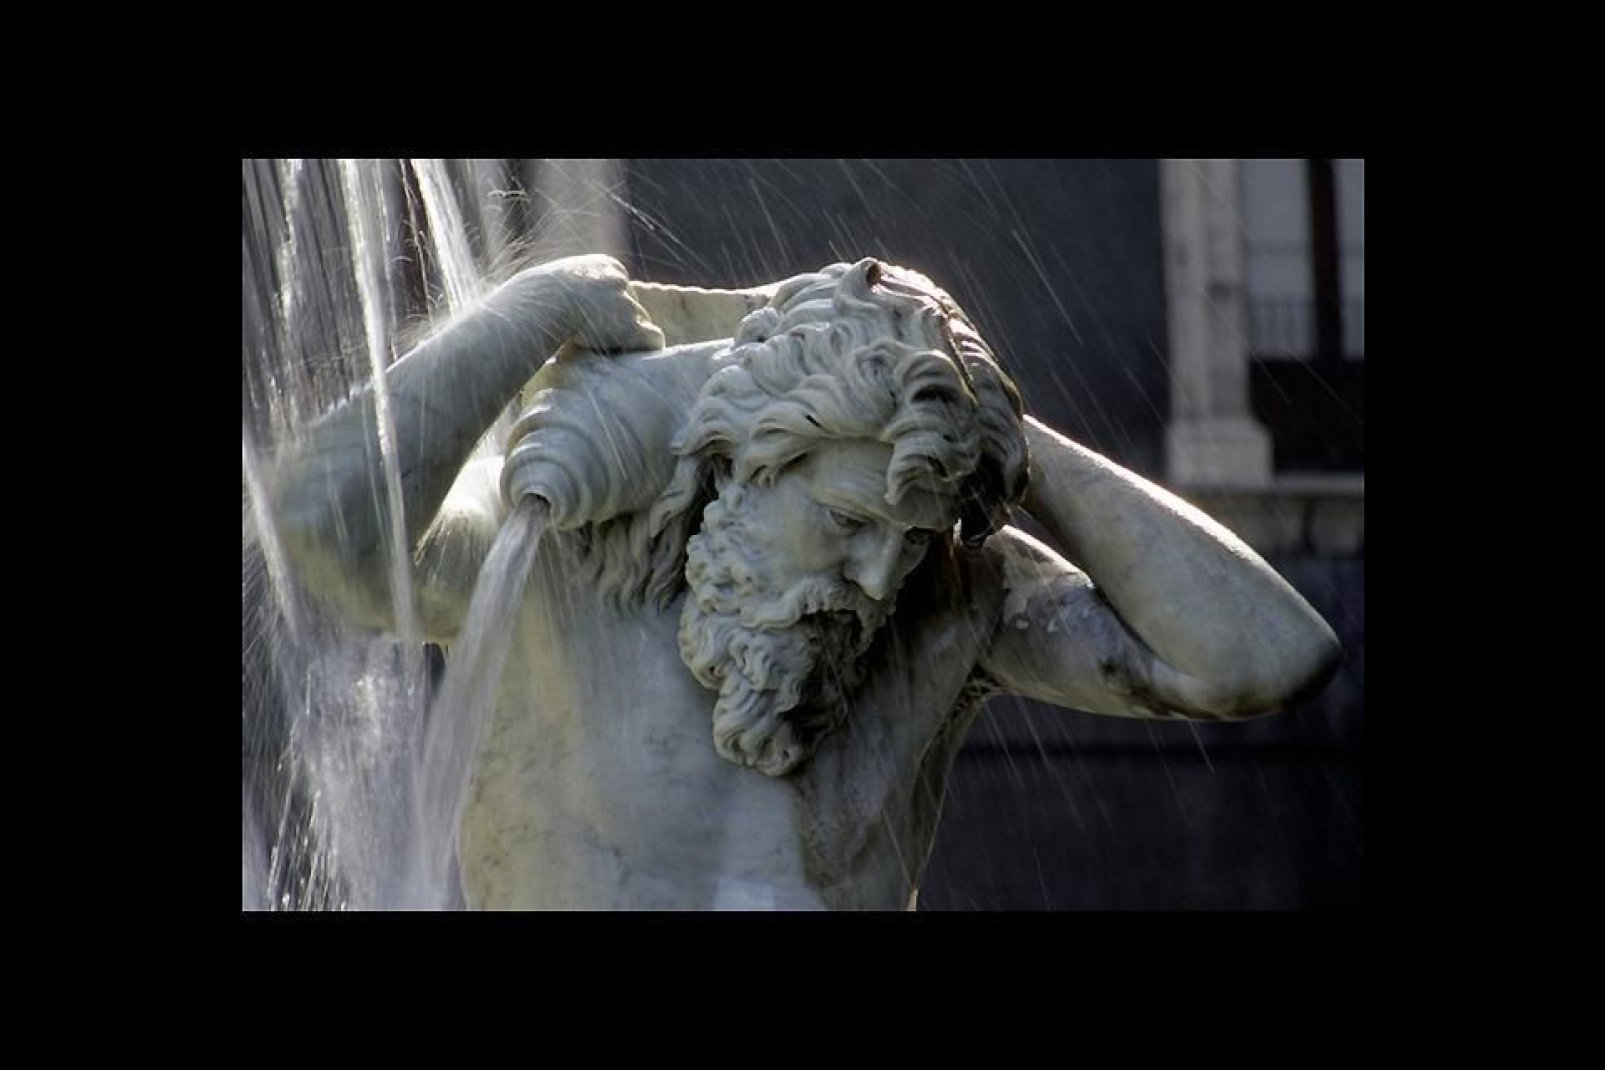 Catania besitzt zahlreiche eindrucksvolle Springbrunnen. Teilansicht des Brunnens von Amenano auf der Piazza Duomo.